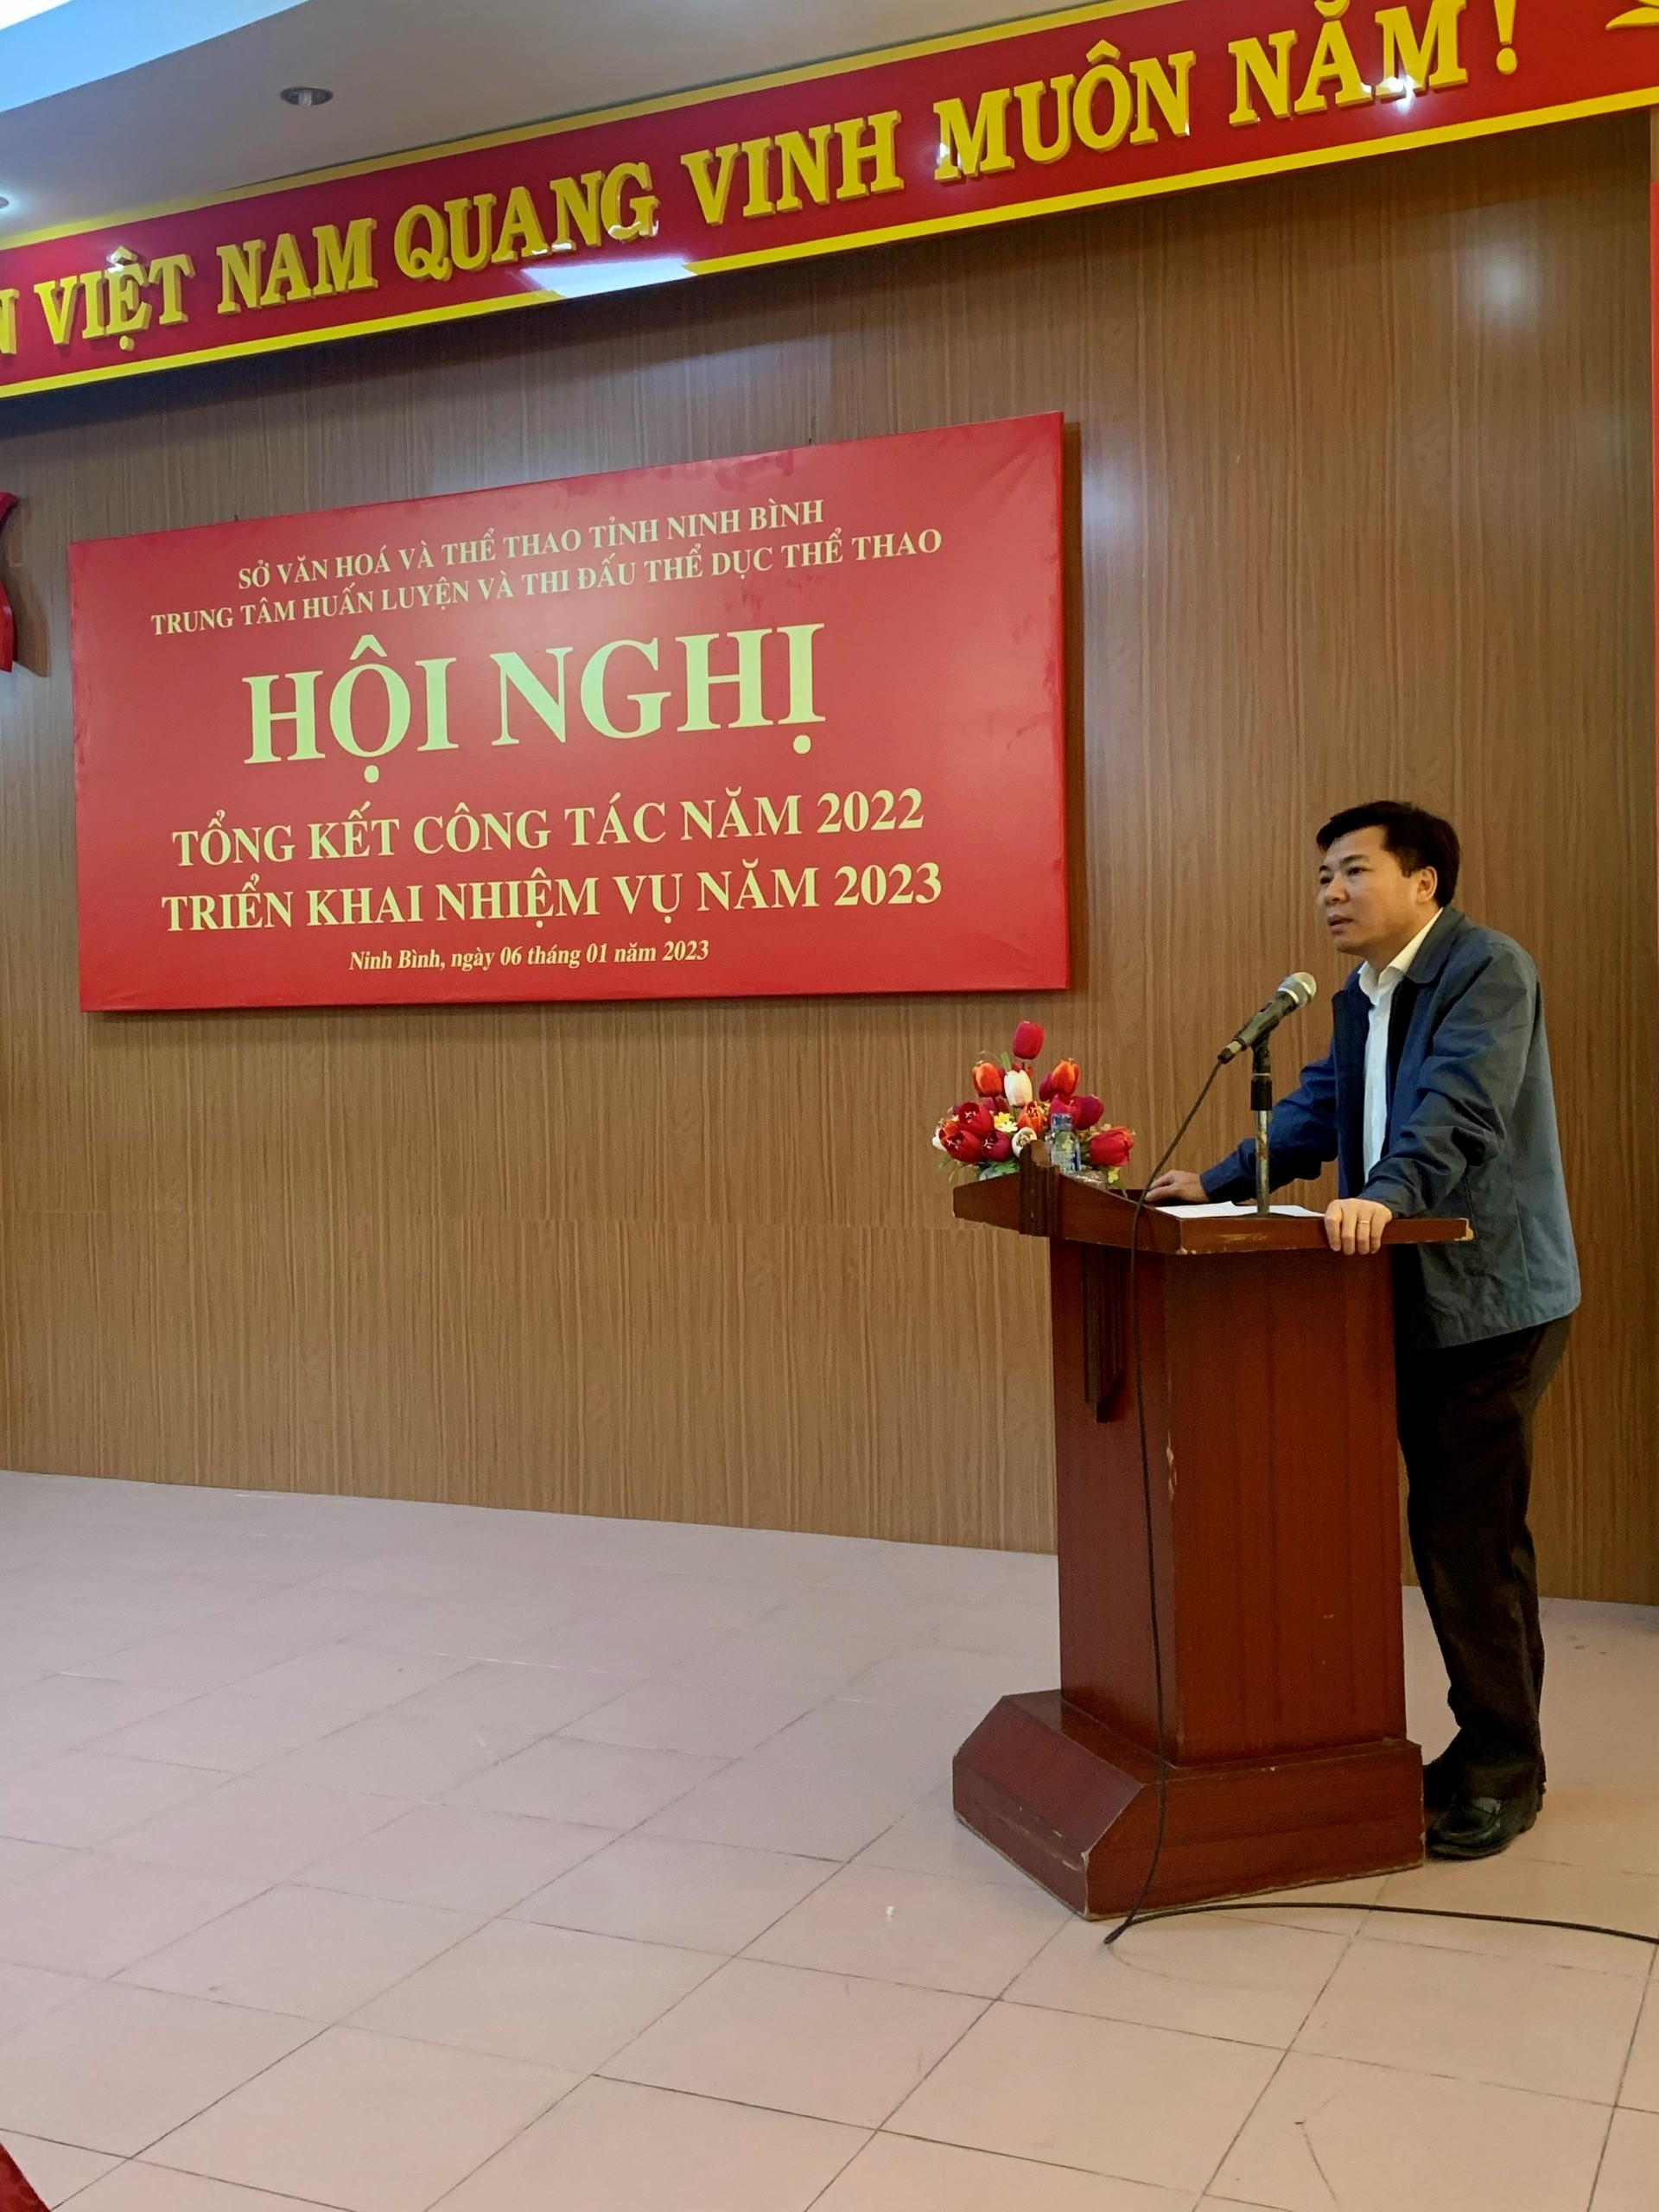 Trung tâm Huấn luyện và Thi đấu TDTT tỉnh Ninh Bình tổ chức  Hội nghị tổng kết công tác năm 2022, triển khai nhiệm vụ năm 2023